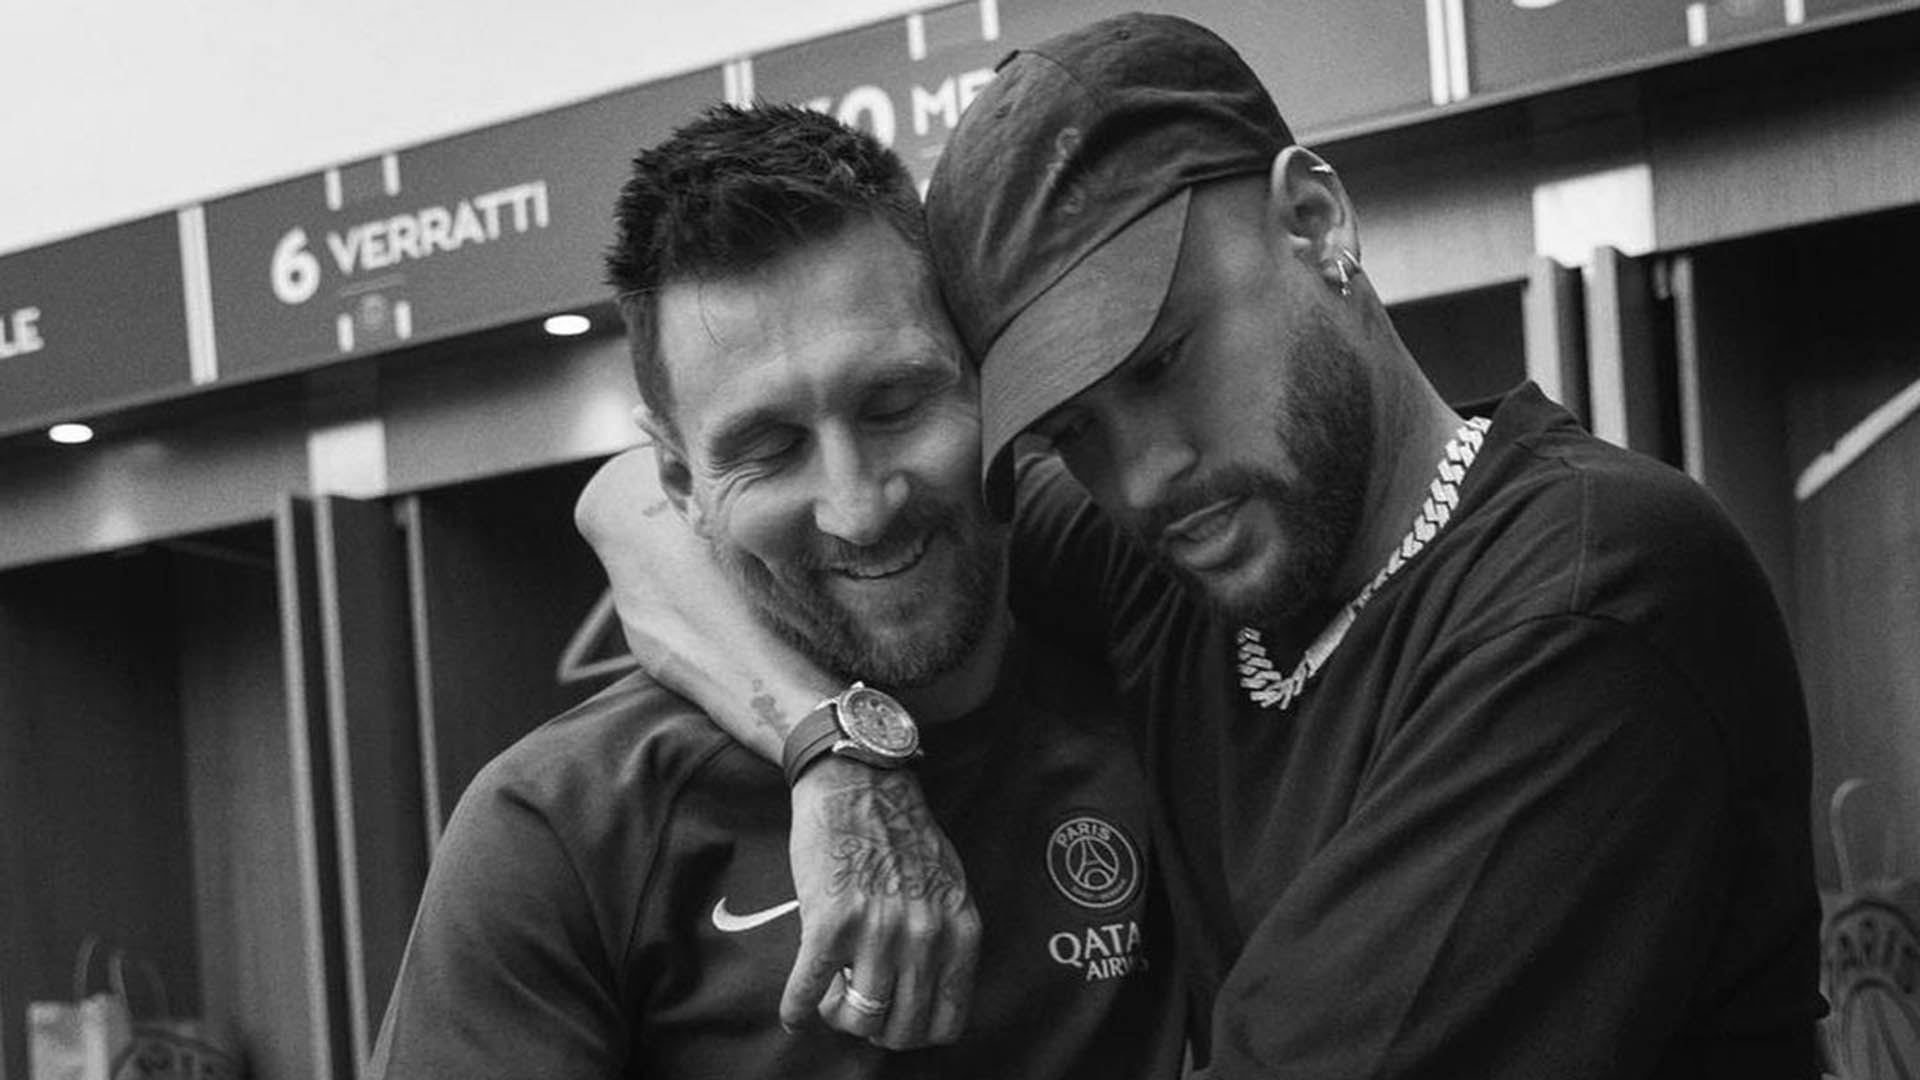 Del “no salió como pensábamos” al “volvimos a disfrutar de jugar juntos”: el sentido cruce de mensajes entre Neymar y Messi       